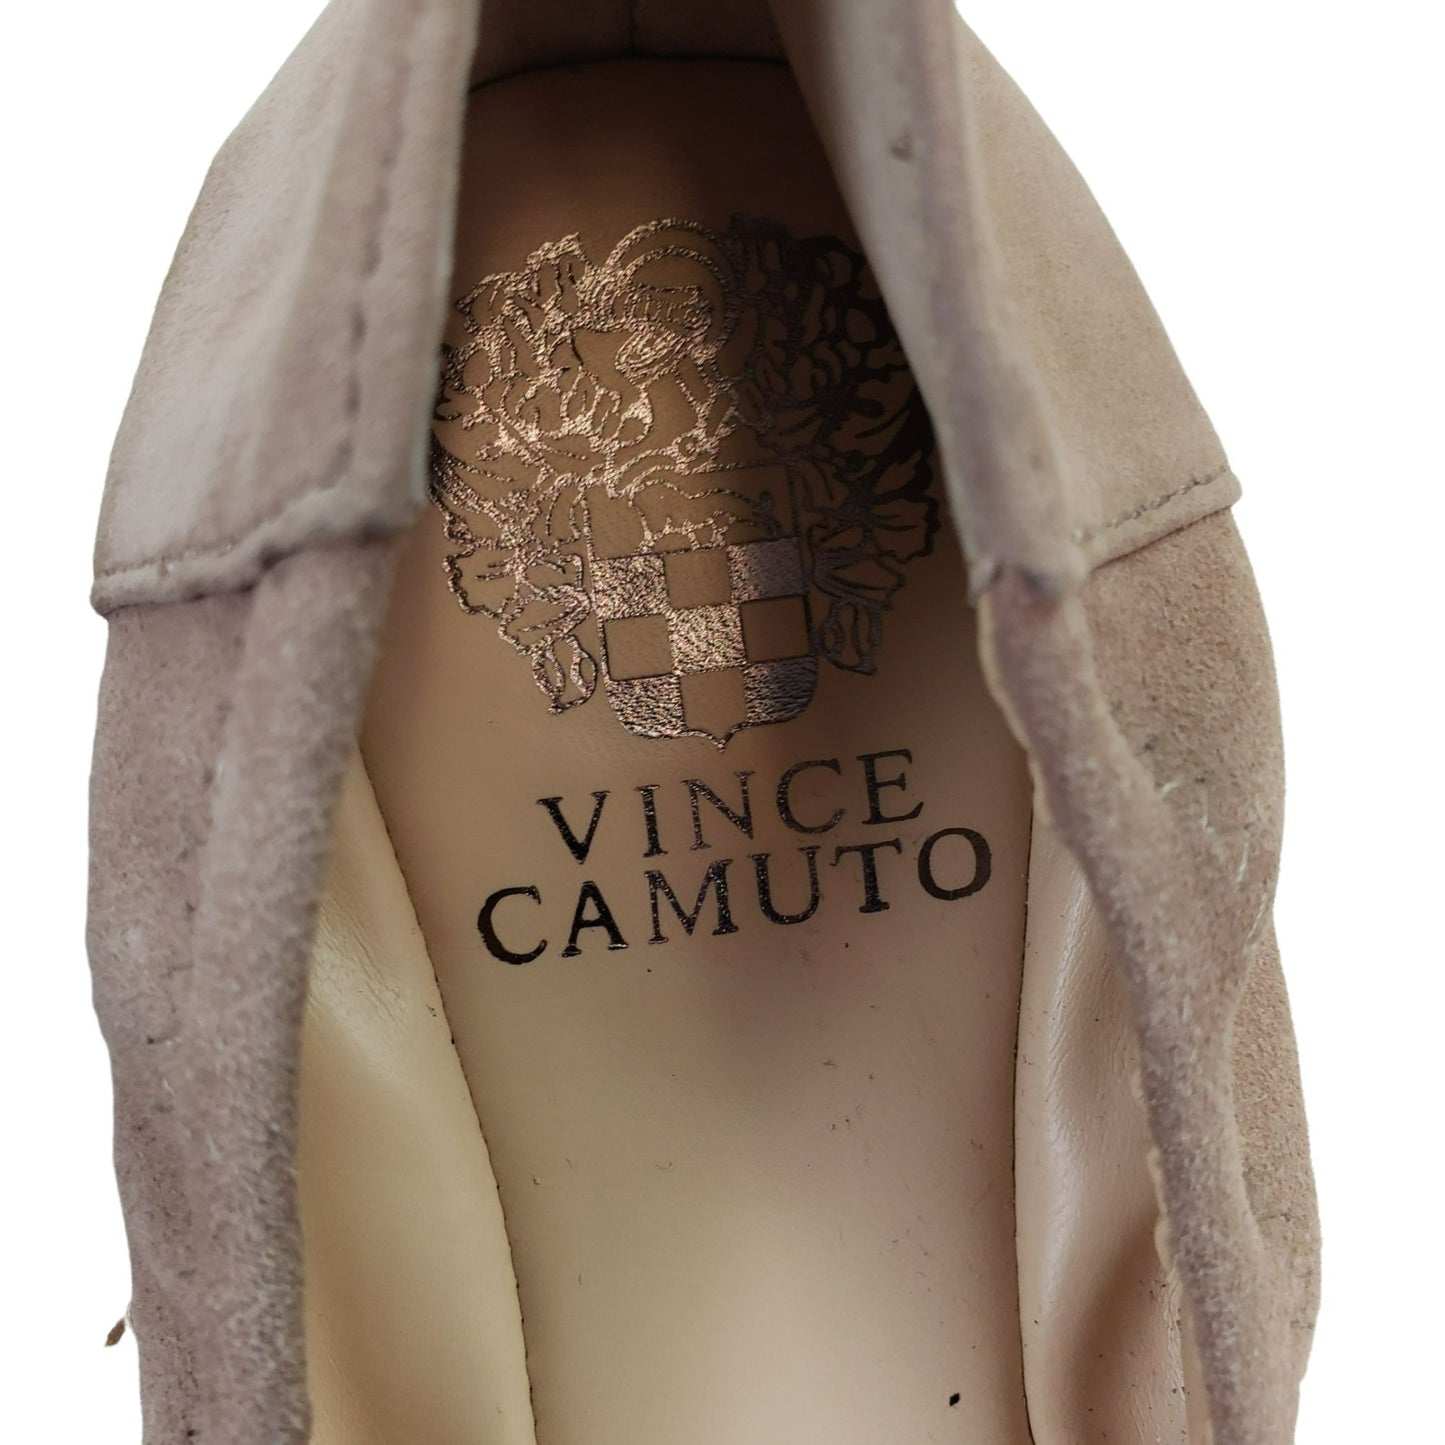 Vince Camuto Ellen Suede Leather Ballet Flats Size 7.5